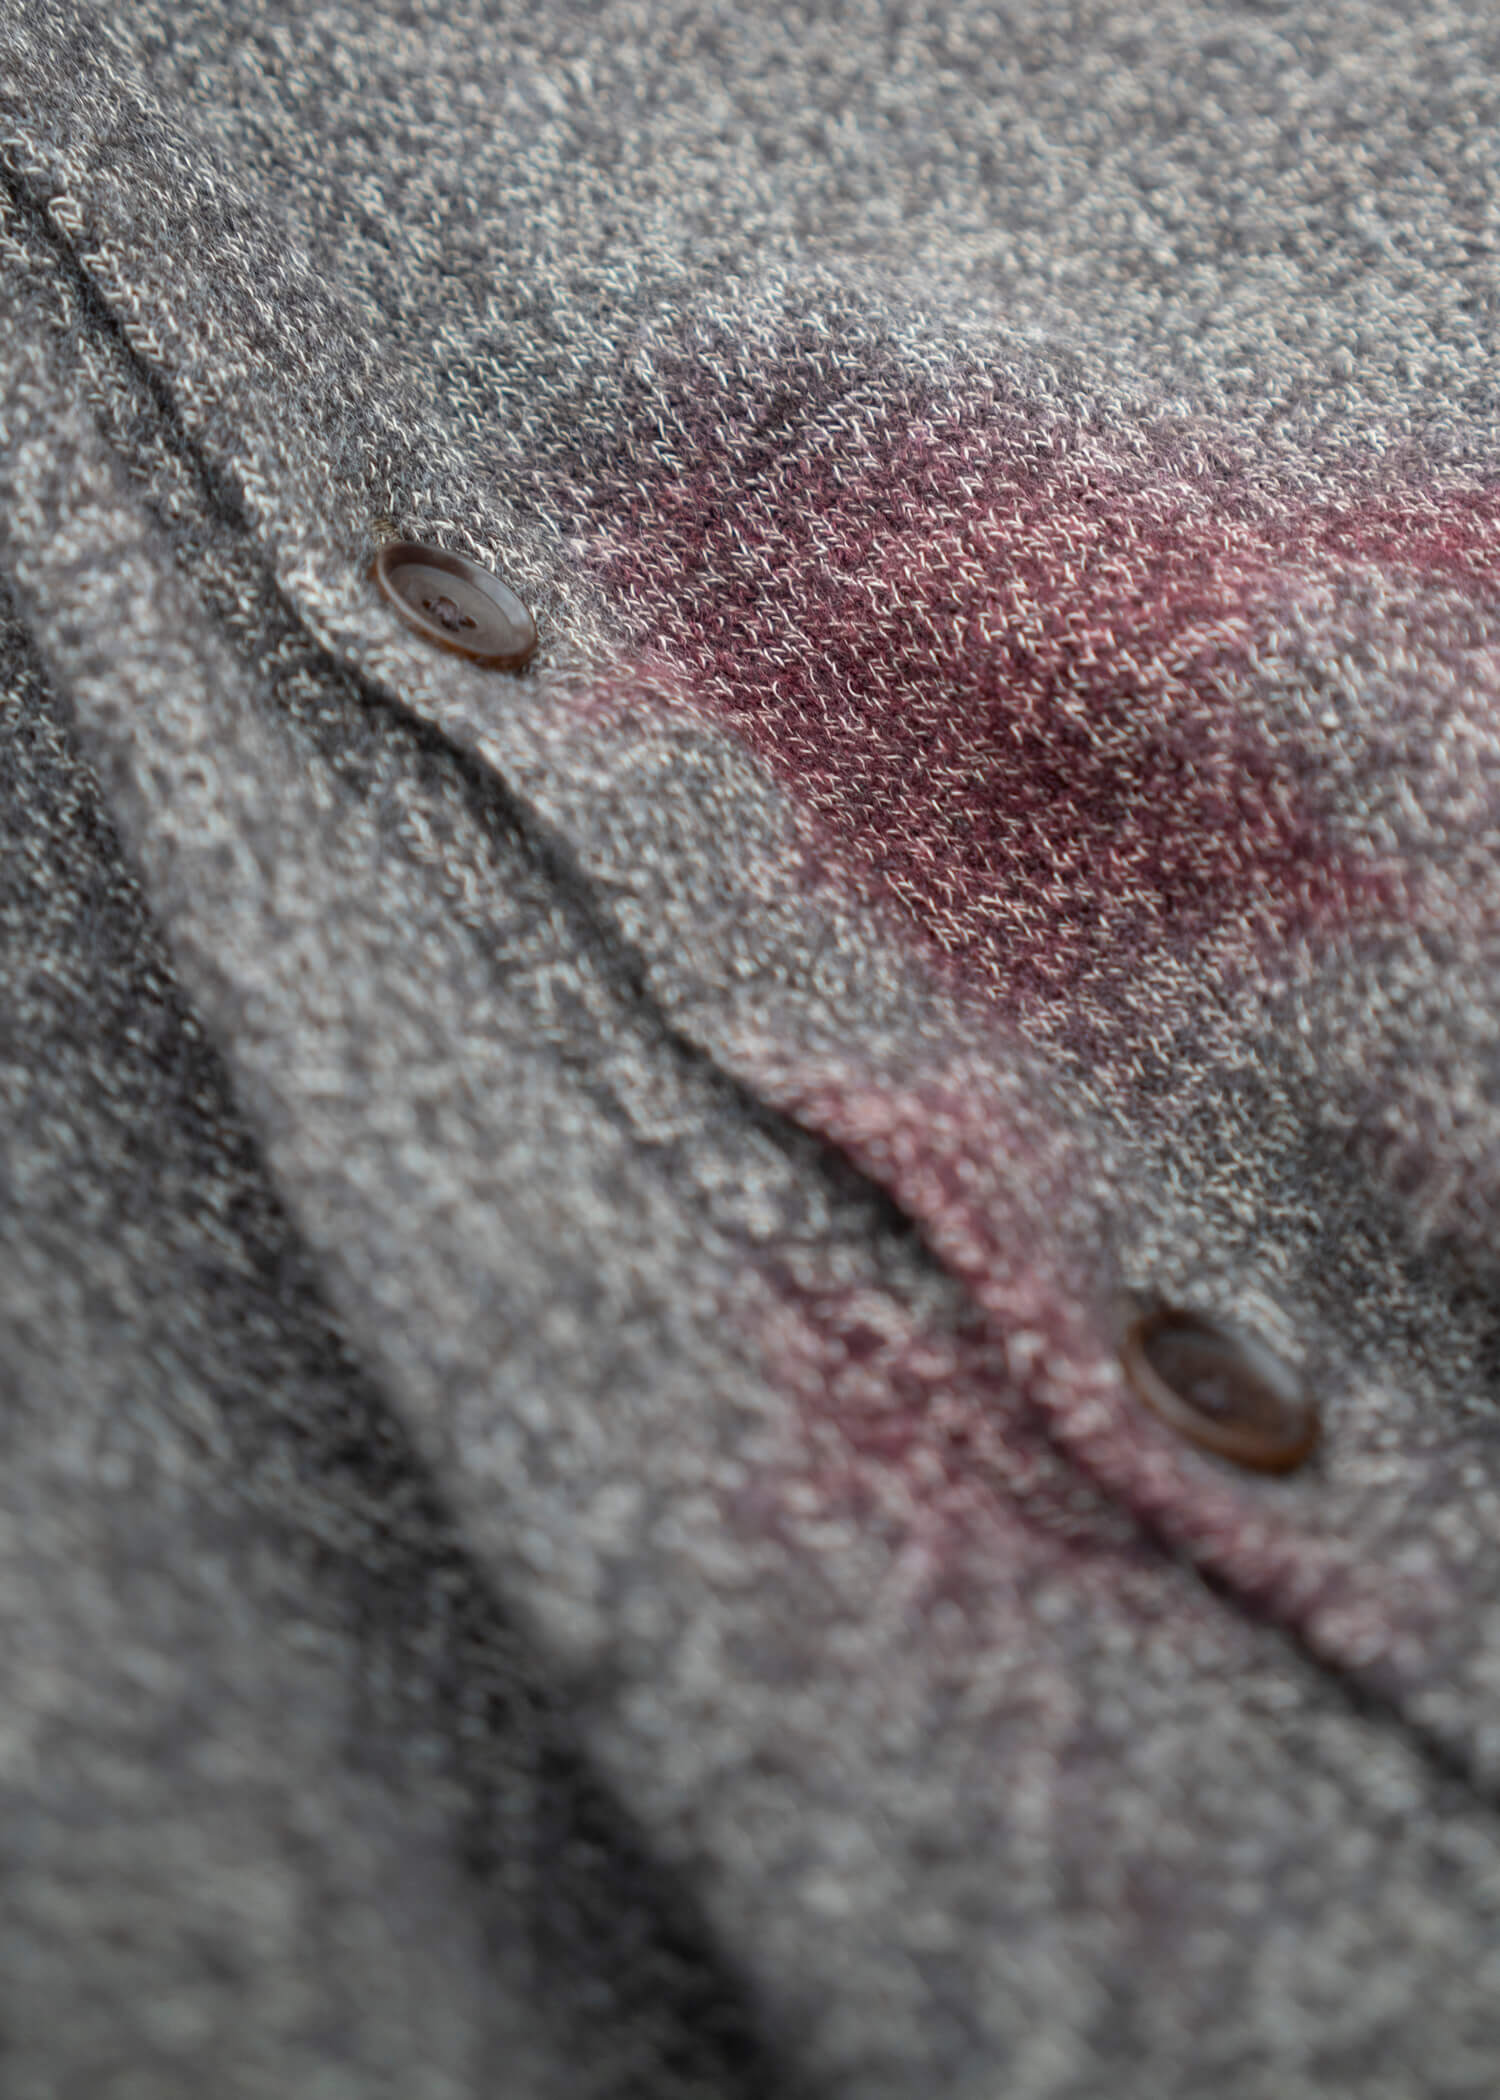 SUZUSAN Wool Cotton Jersey Cardi gan(Madara Shibori) Crimson - Muddy Brown